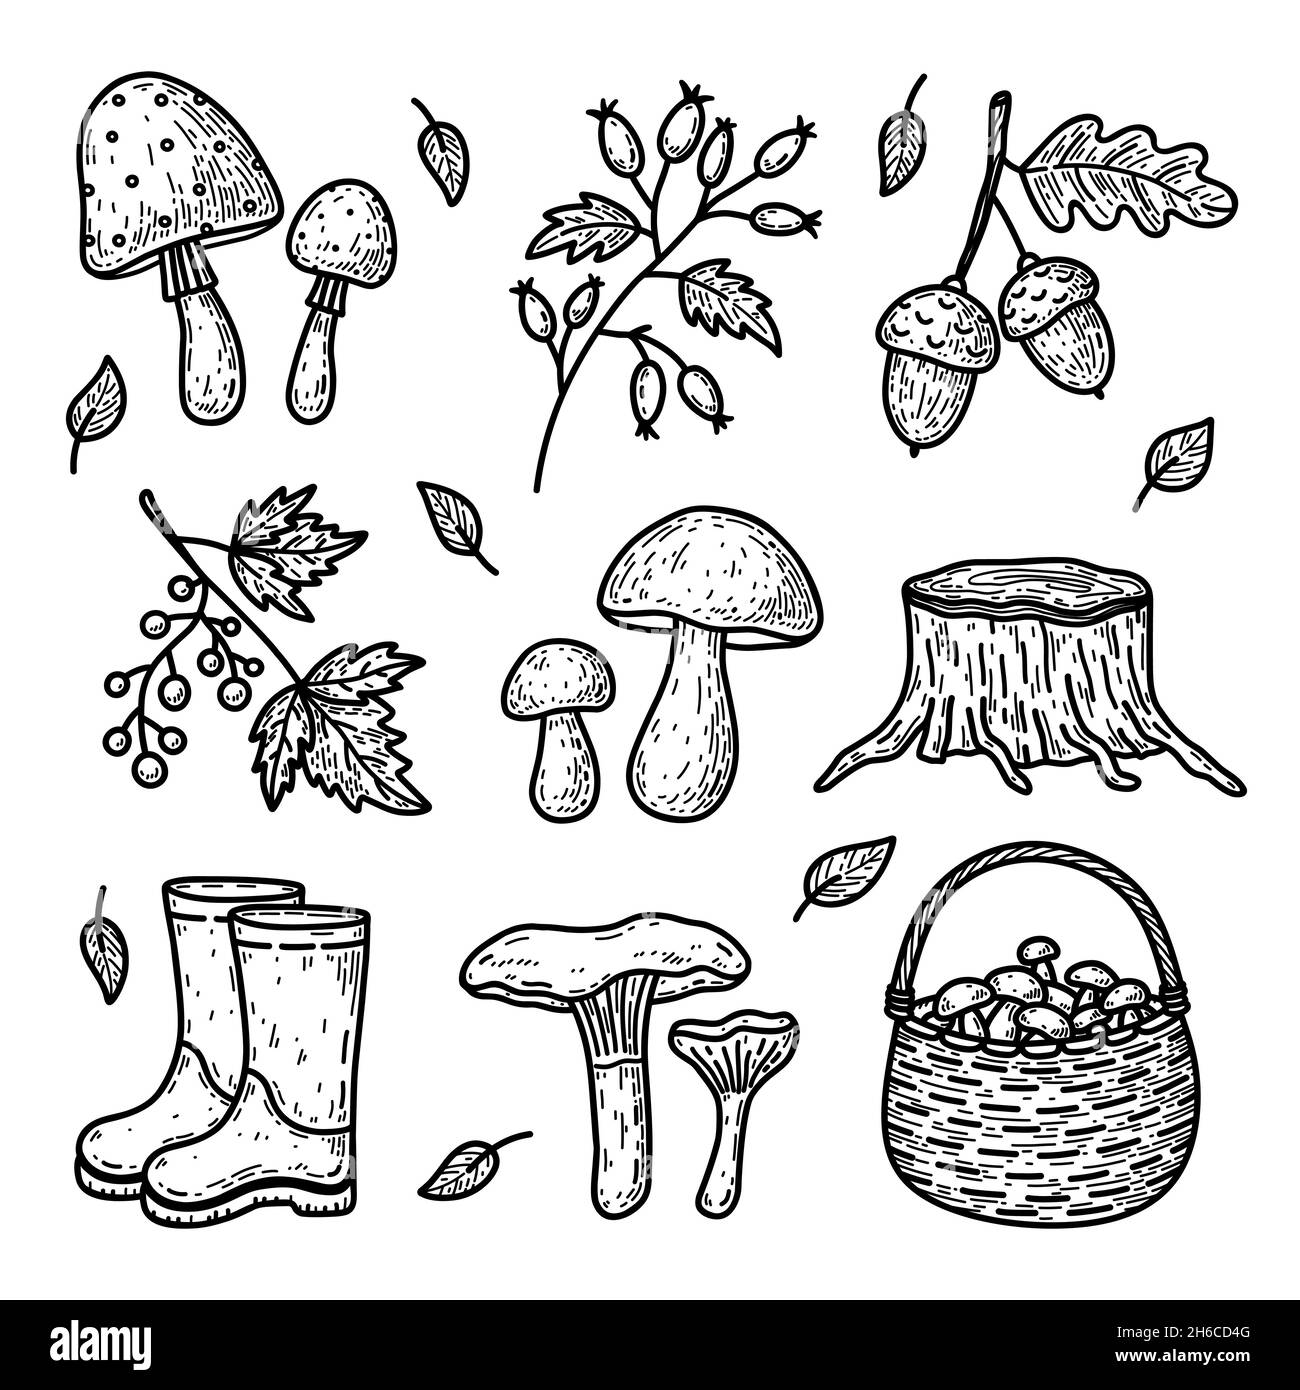 Doodle Set von Herbstelementen - Waldpilze, Beerenzweige, Eicheln, Gummistiefel und andere. Vektor-handgezeichnete Illustration isoliert auf Weiß Stock Vektor